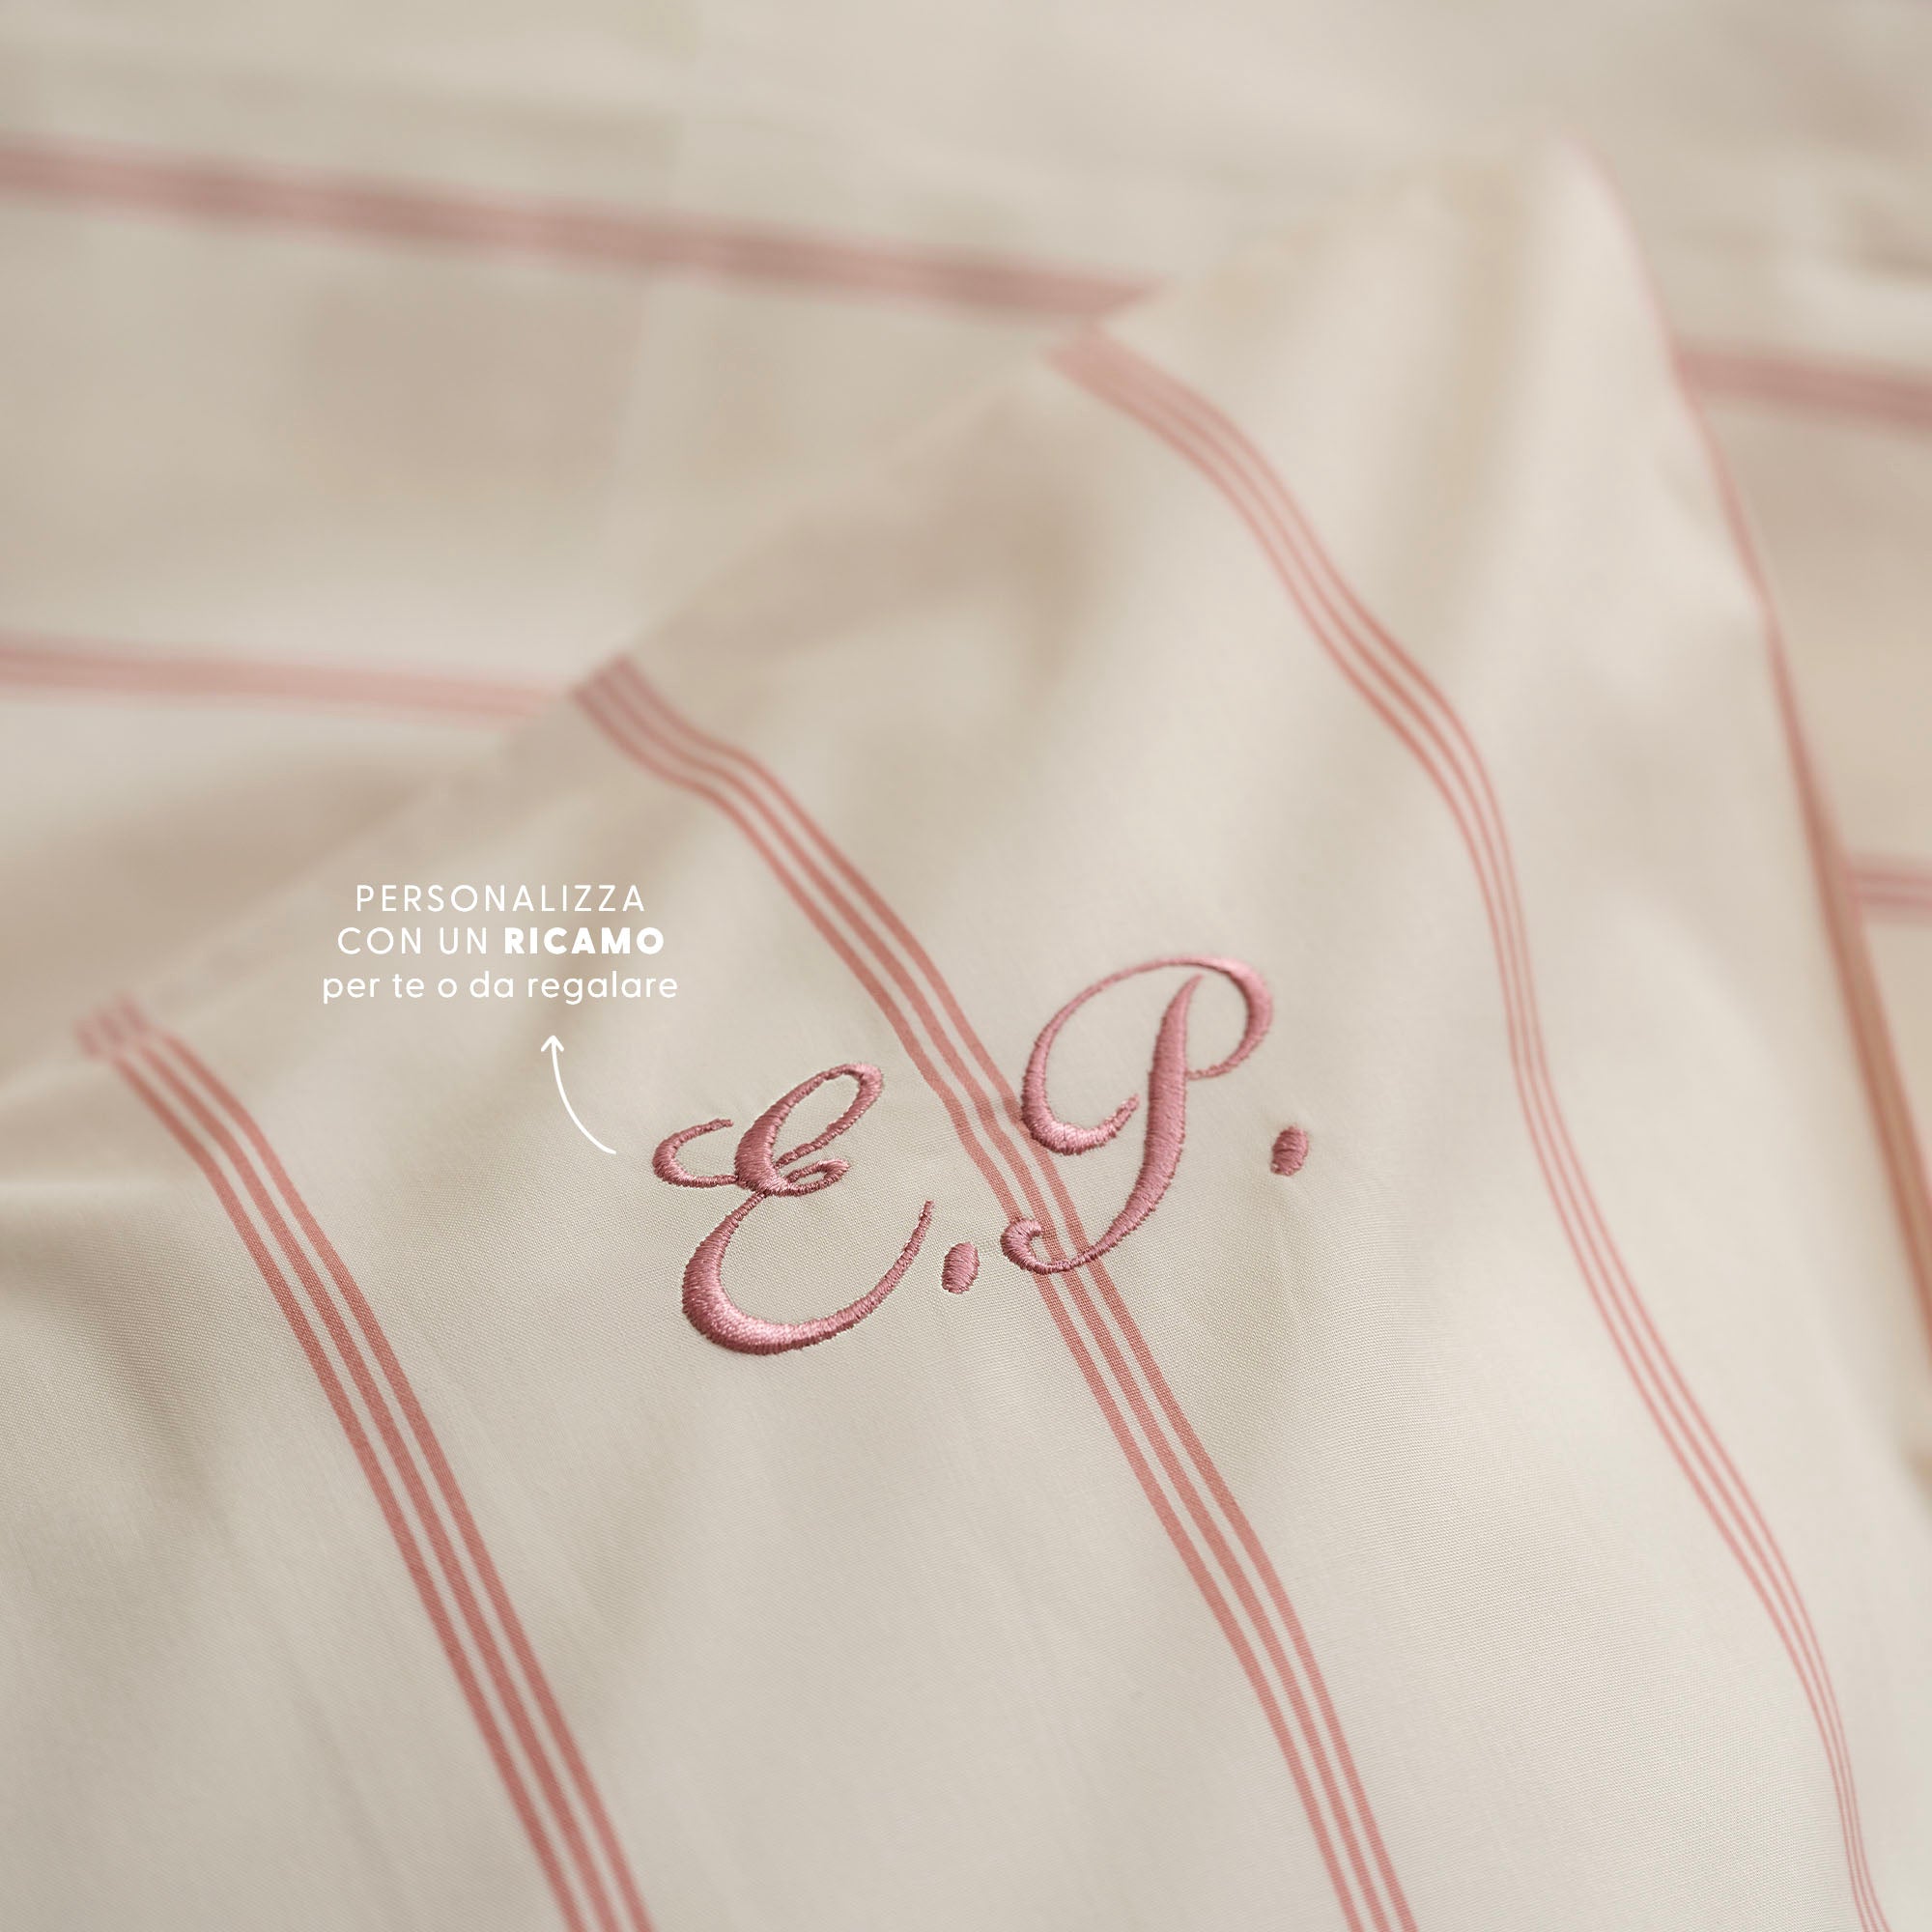 Dettaglio ricamo personalizzato su cuscino a righe crema e rosa antico Dalfilo